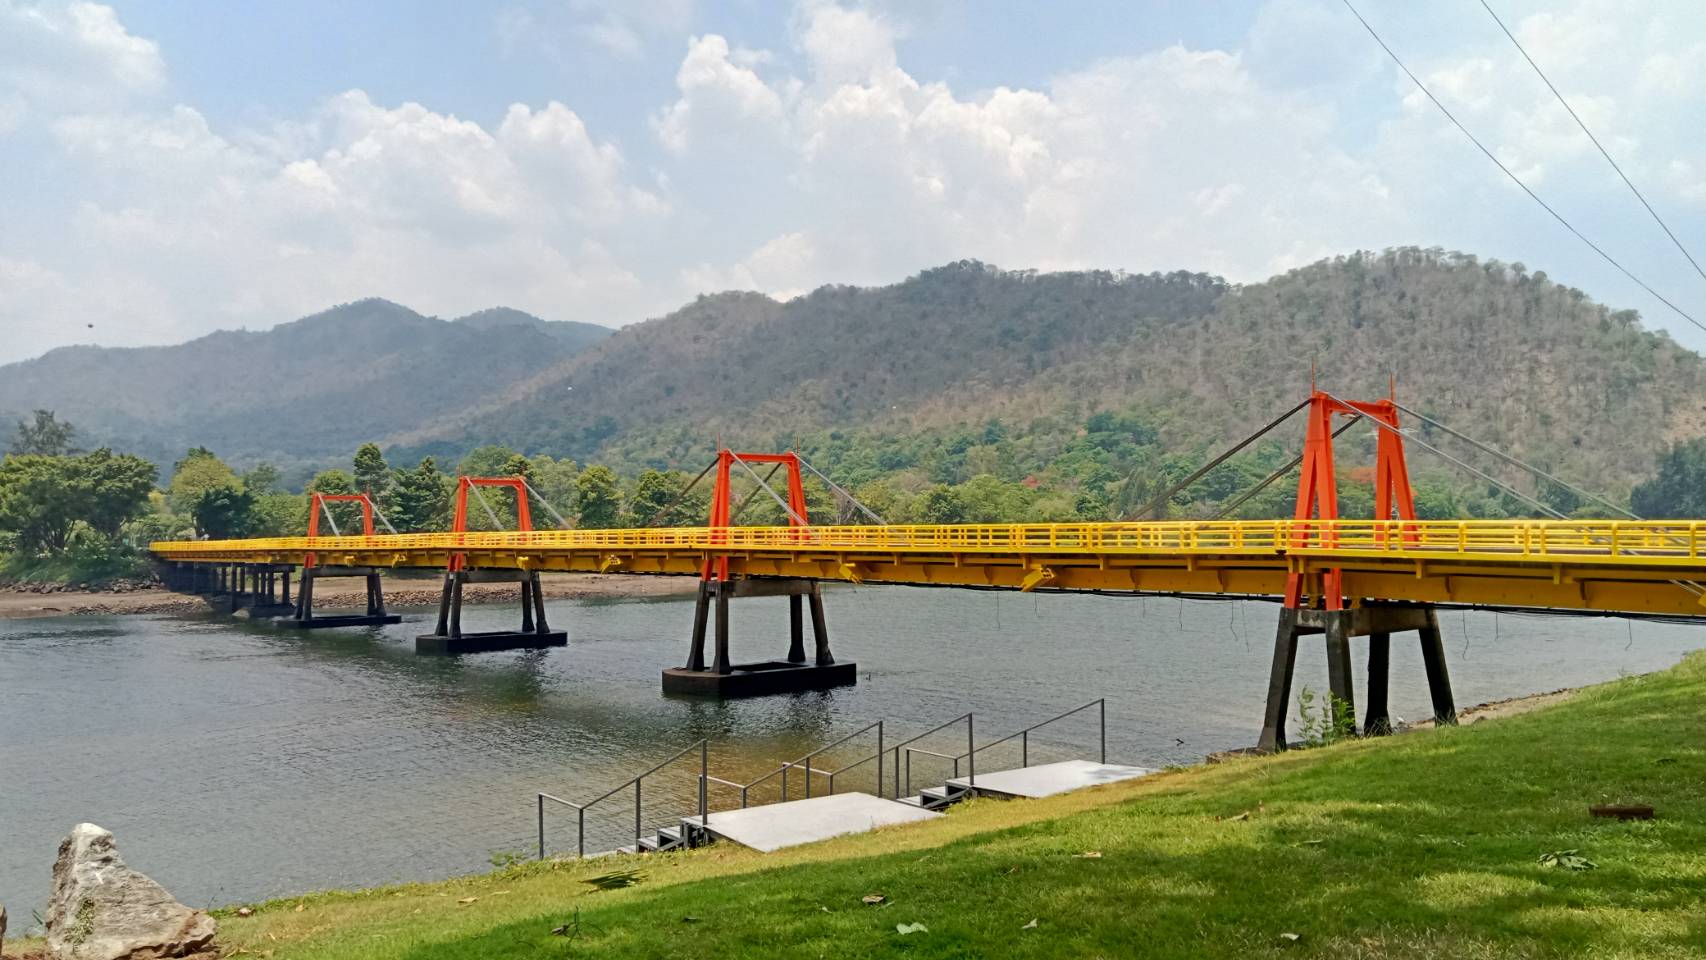 "Ping Pipan Bridge" Coating Maintenance